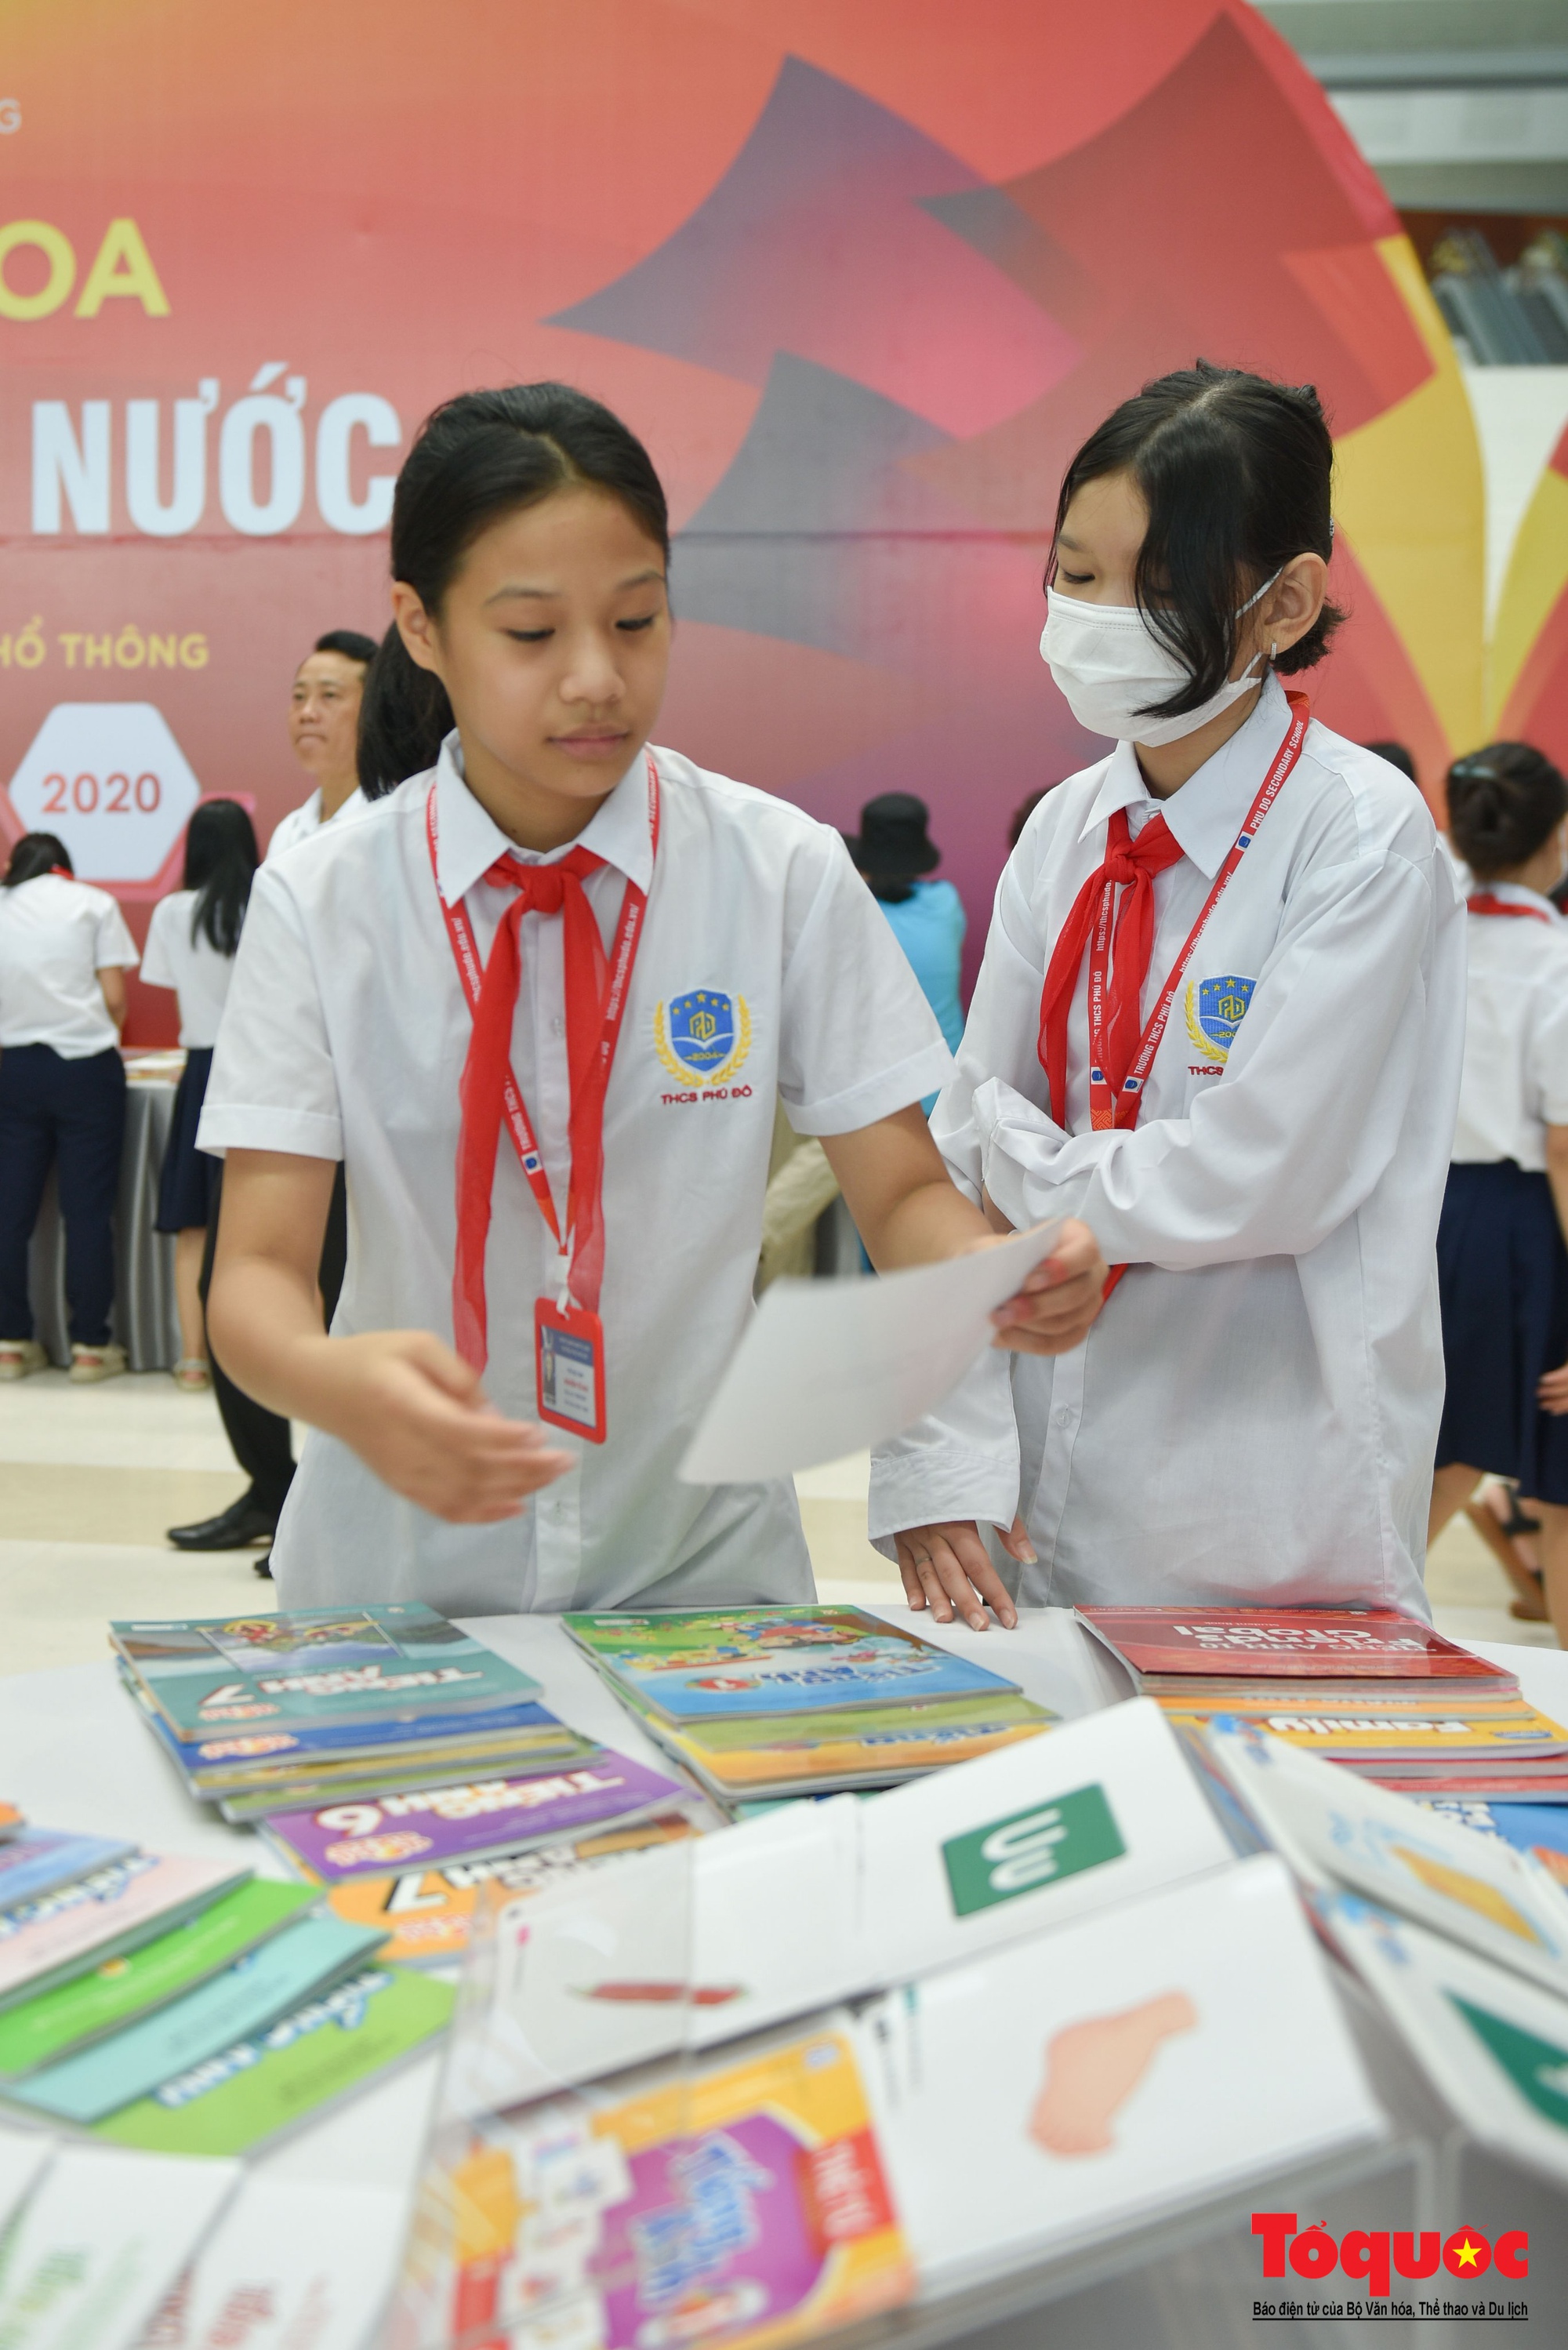 Hà Nội: Học sinh thủ đô hào hứng với hoạt động Trưng bày sách giáo khoa giáo dục phổ thông - Ảnh 6.